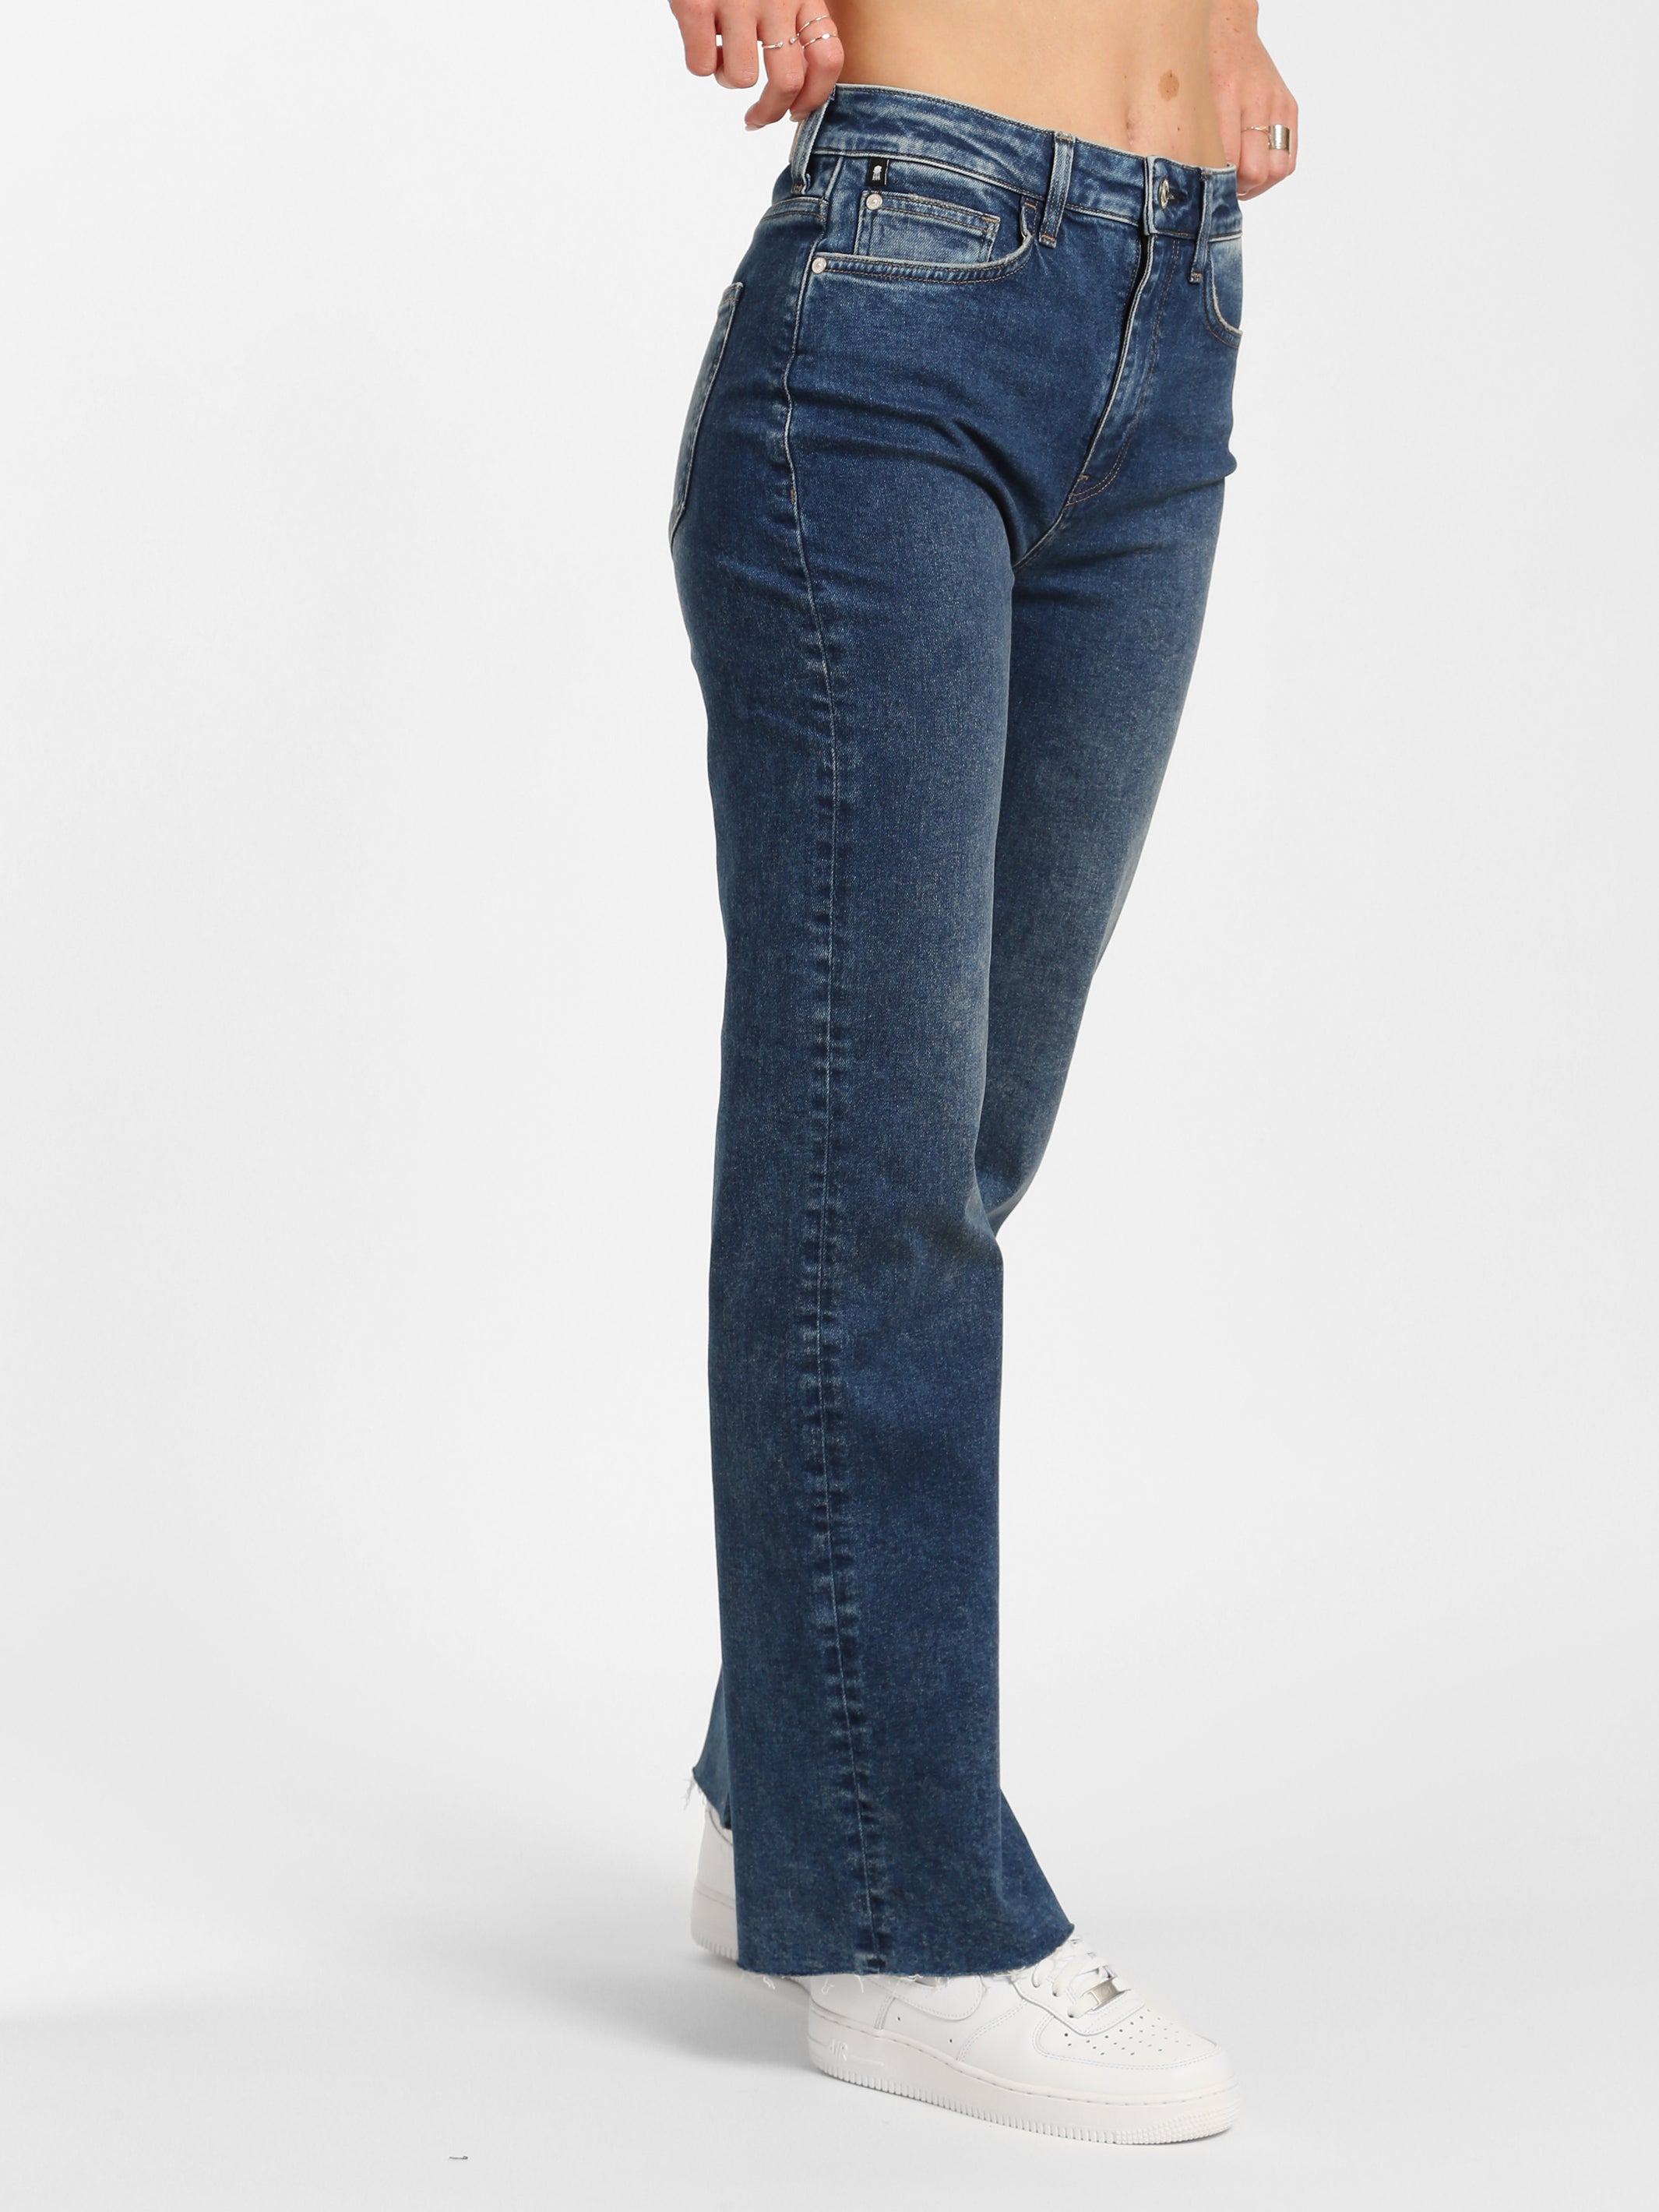 Women's Jeans, Black, Blue & Low Rise Denims